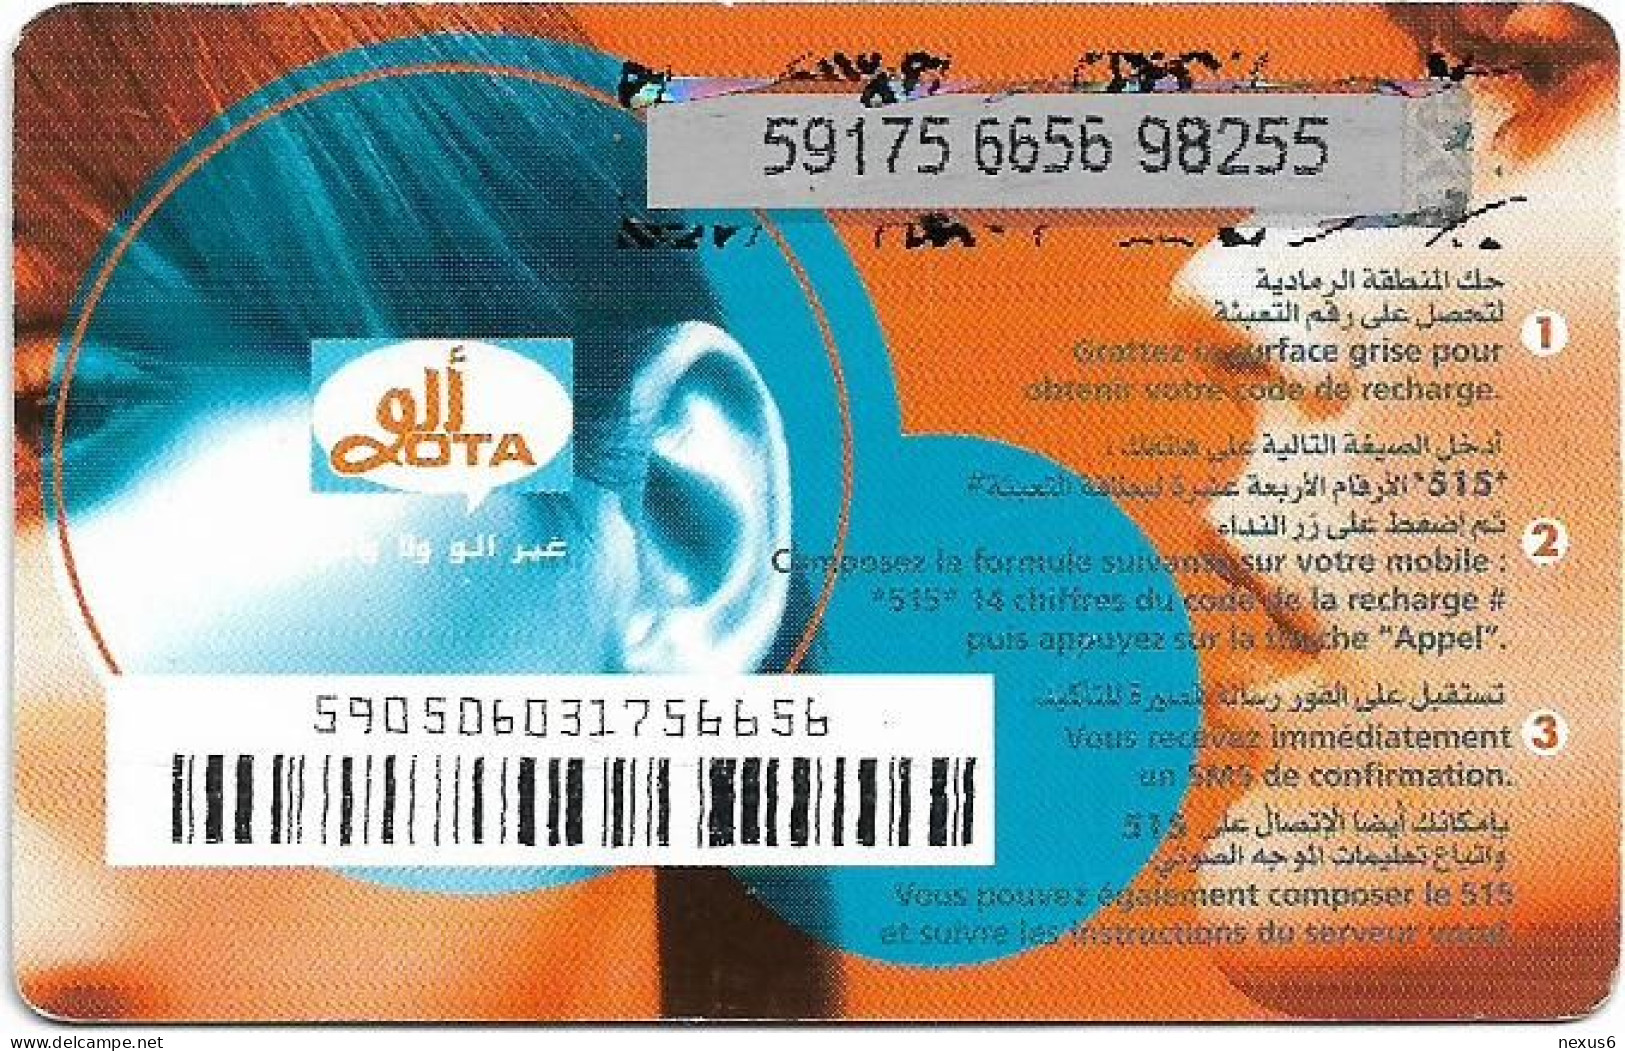 Algeria - Allo OTA - Allo OTA Blue 2 (Grey PIN Background), GSM Refill 500DA, Used - Algeria